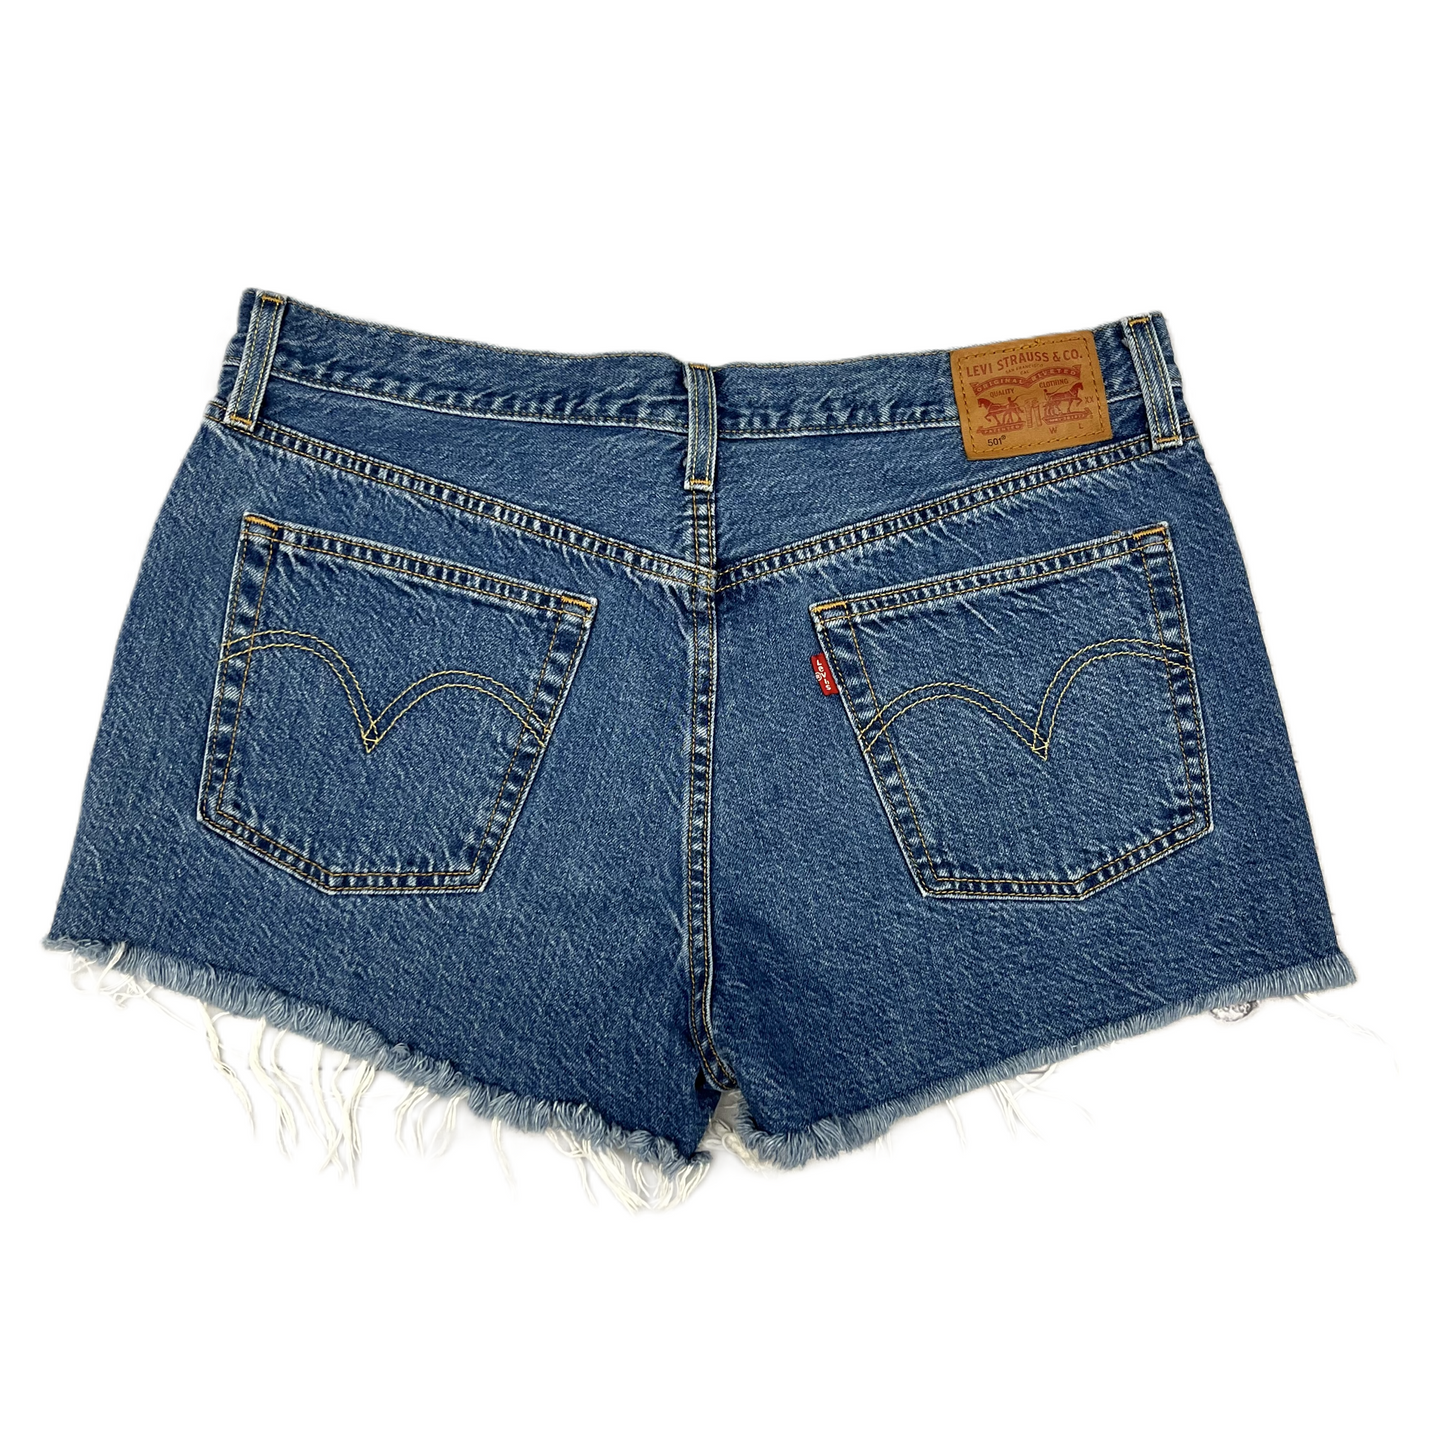 Blue Denim Shorts By Levis, Size: 12